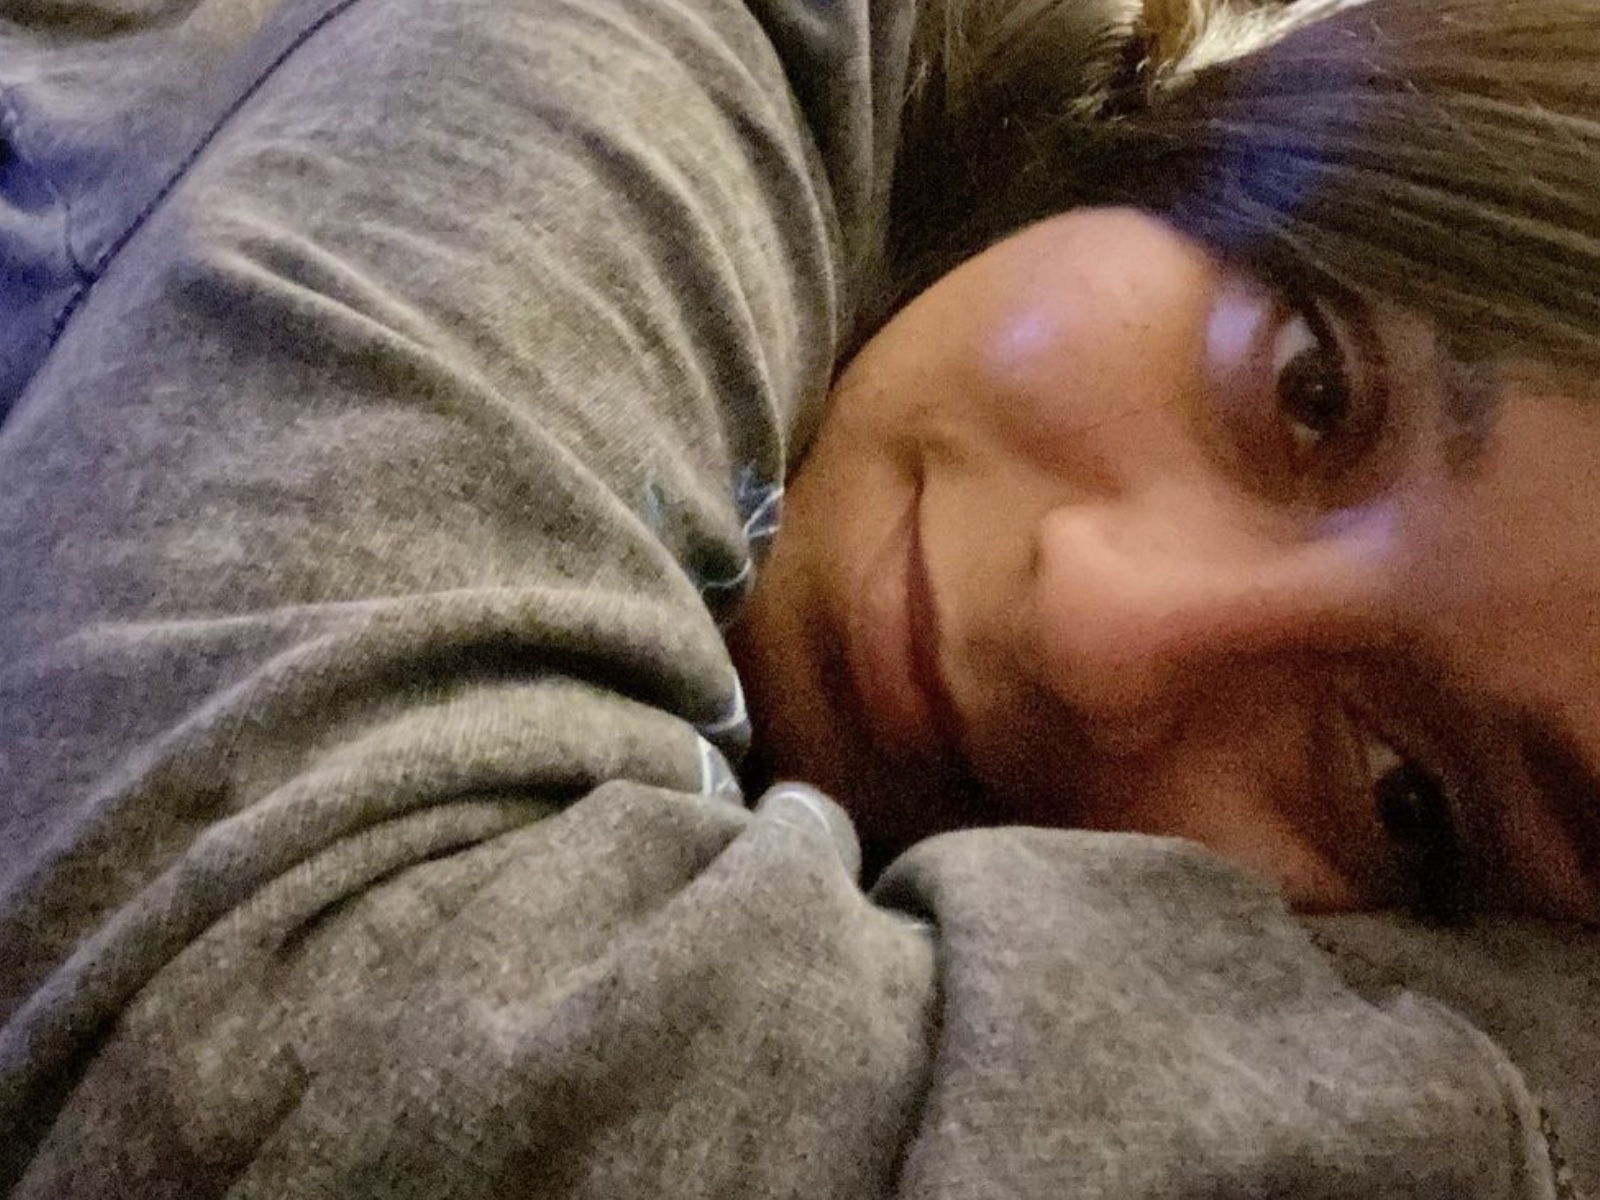 Tahiry Gives OnlyFans Sneak Peek In Steamy At-Home Selfie